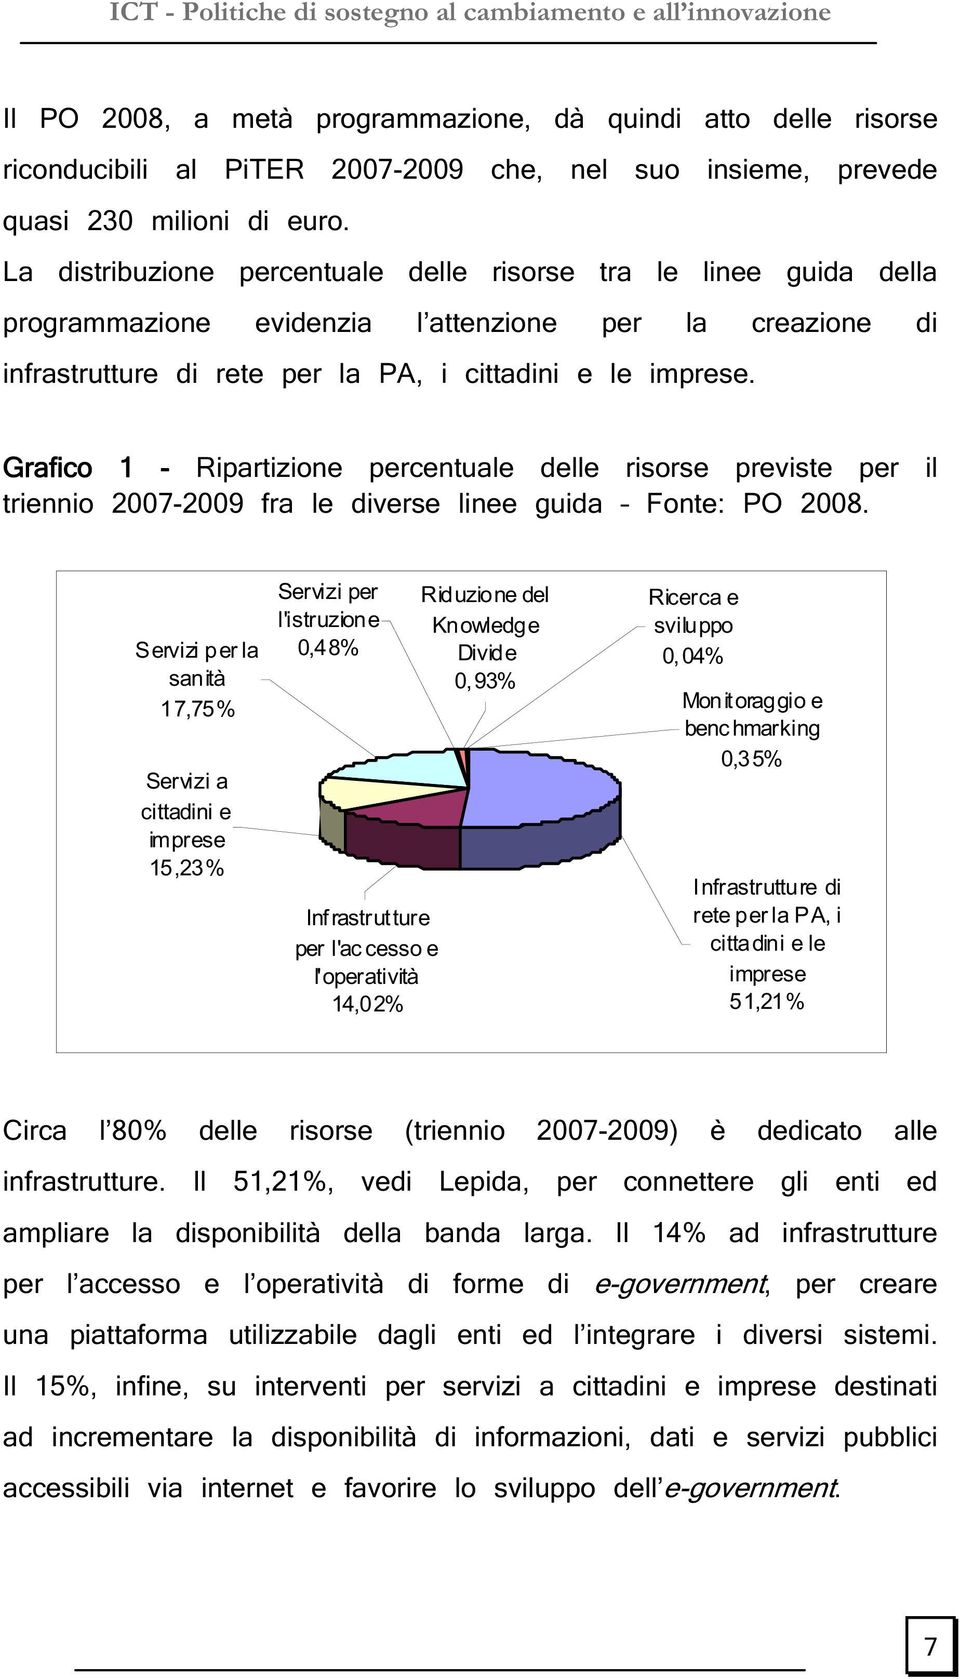 Grafico 1 - Ripartizione percentuale delle risorse previste per il triennio 2007-2009 fra le diverse linee guida Fonte: PO 2008.